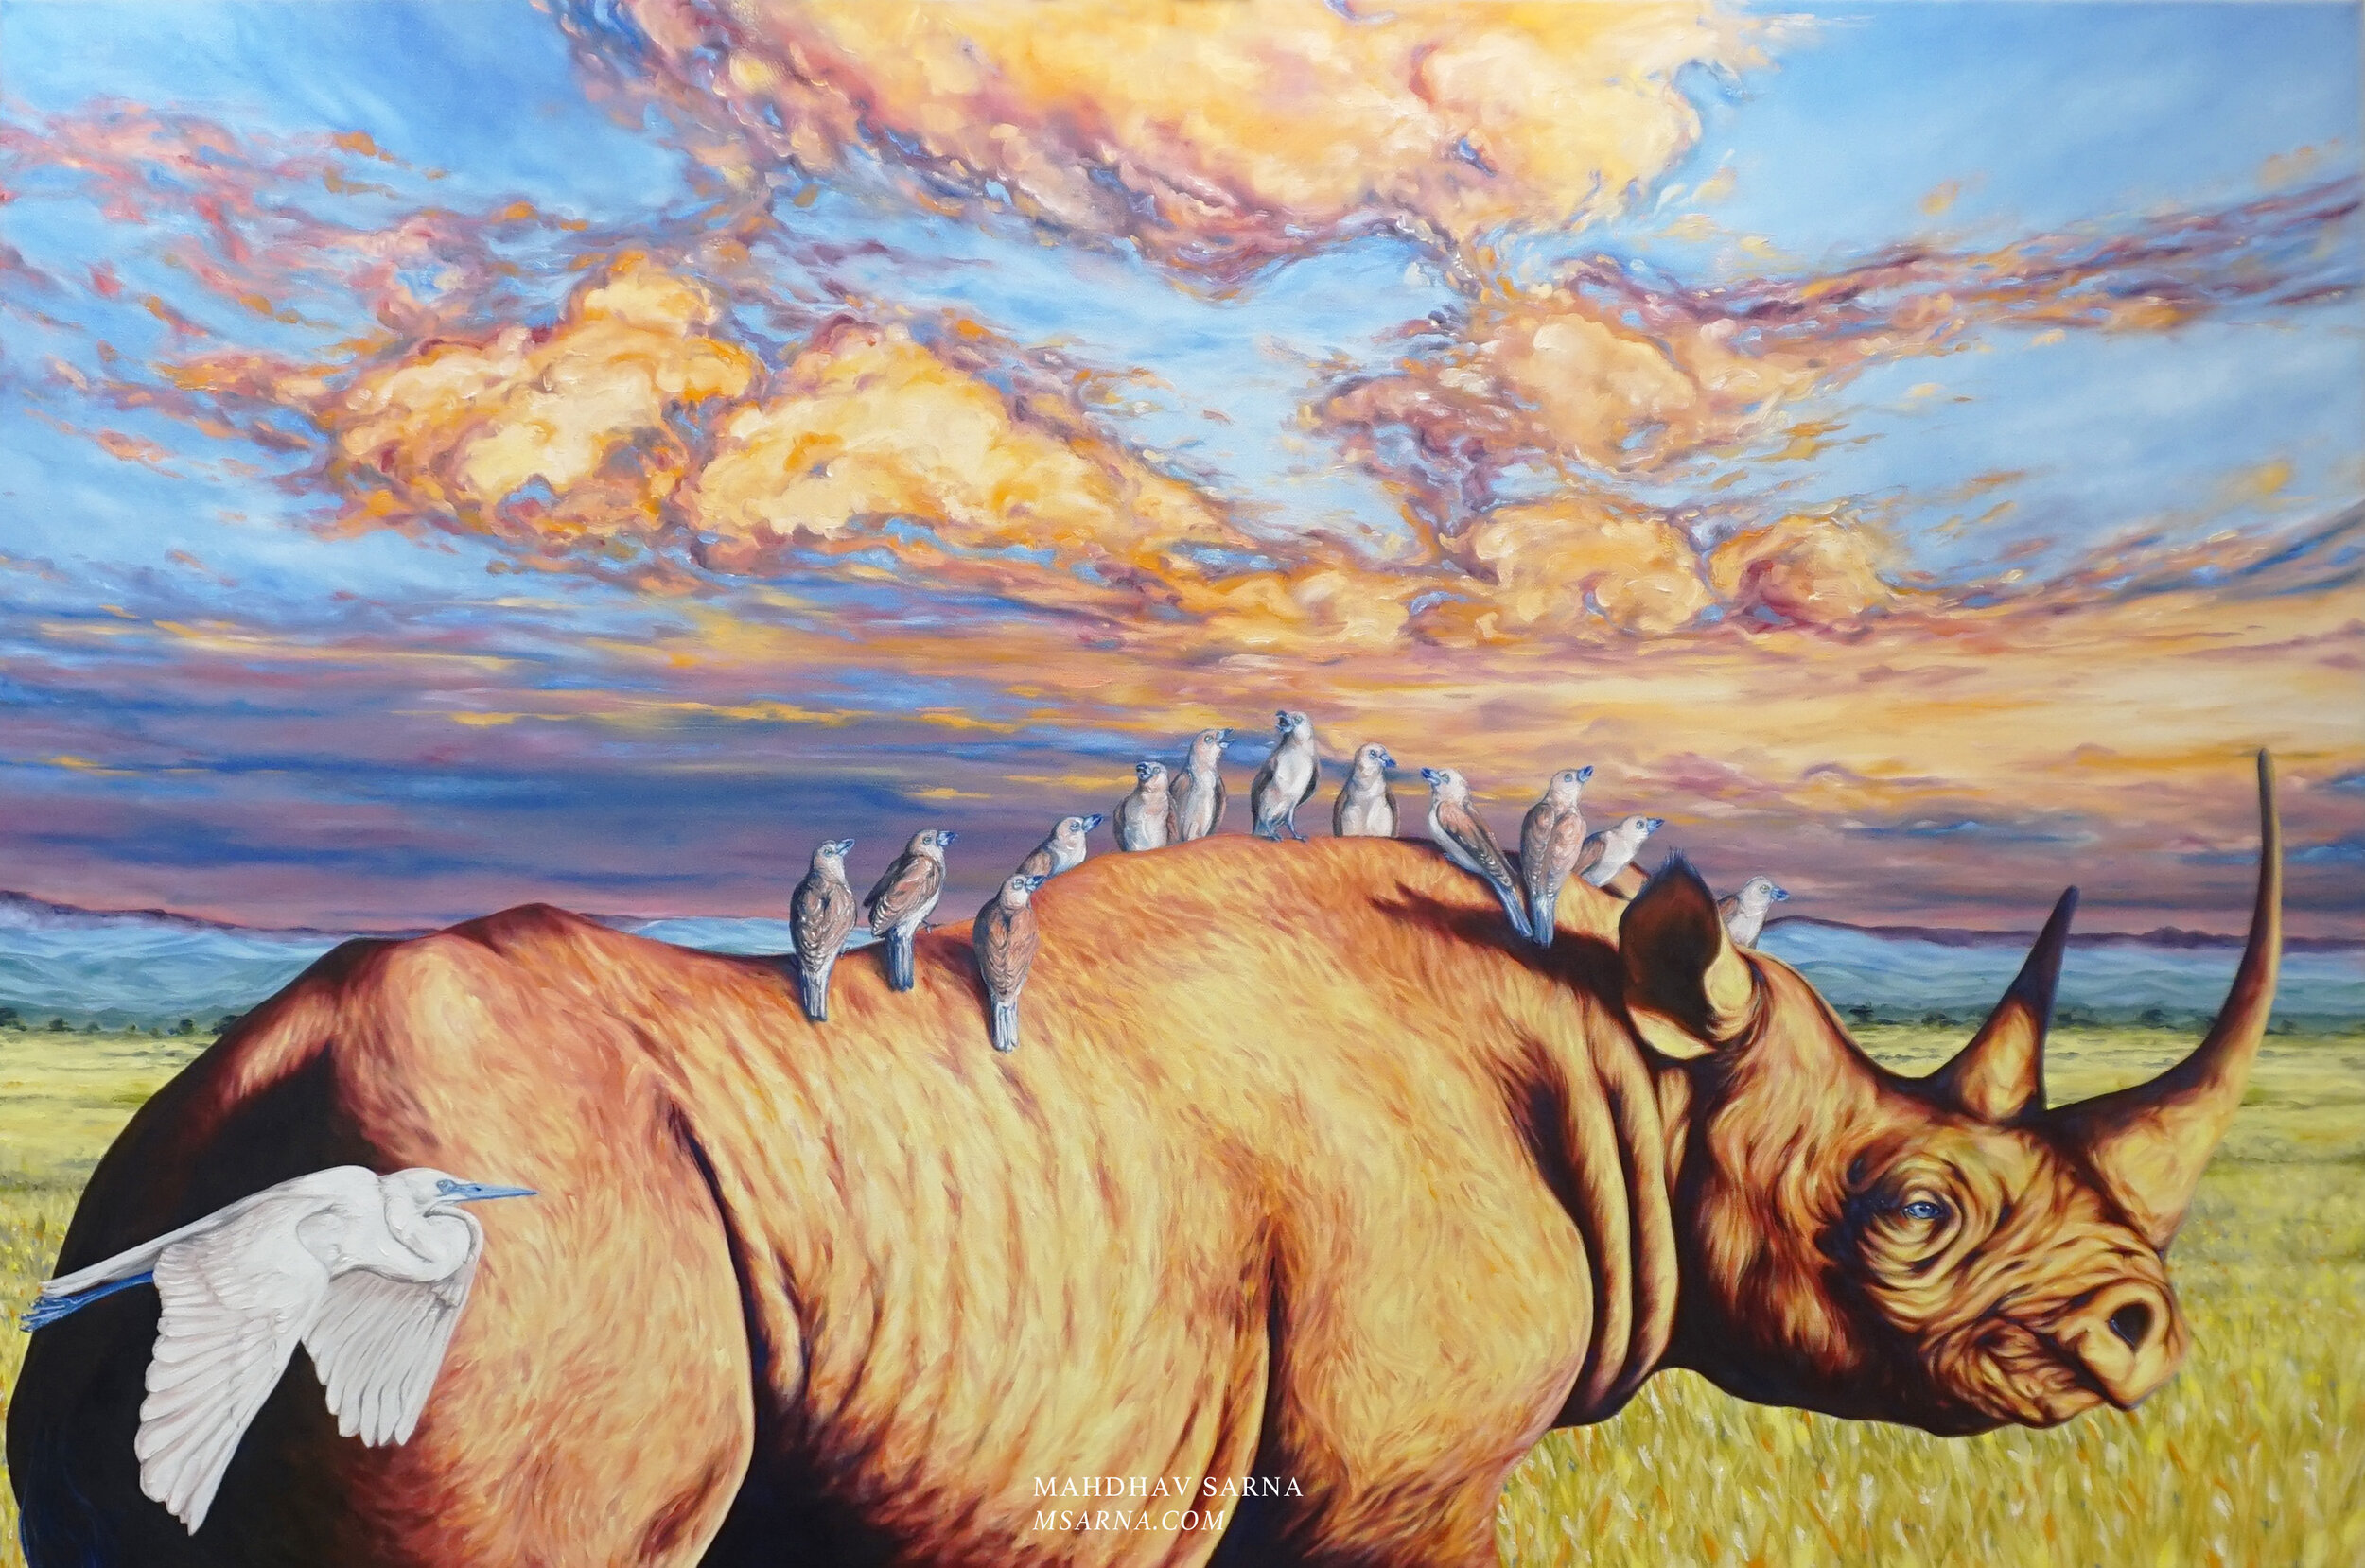 black rhino oil painting thkg wildlife art mahdhav sarna 01.jpg